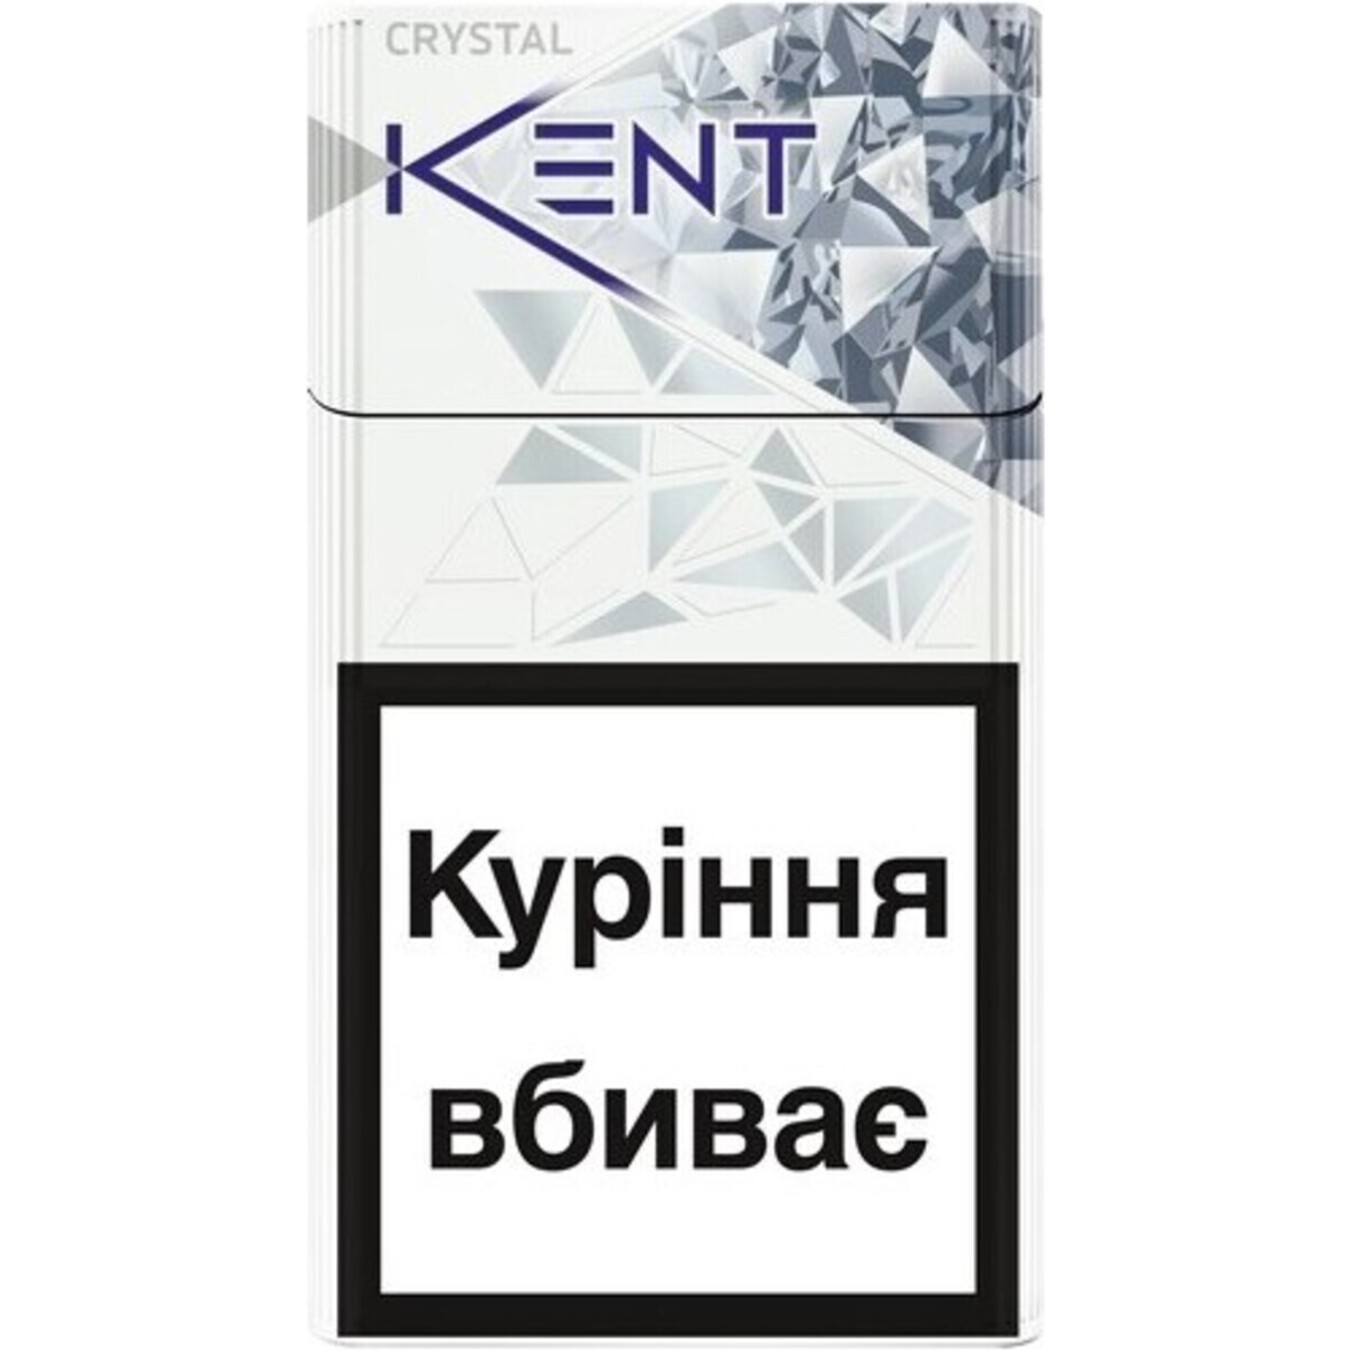 Сигареты Kent Crystal Silver 20шт (цена указана без акциза)